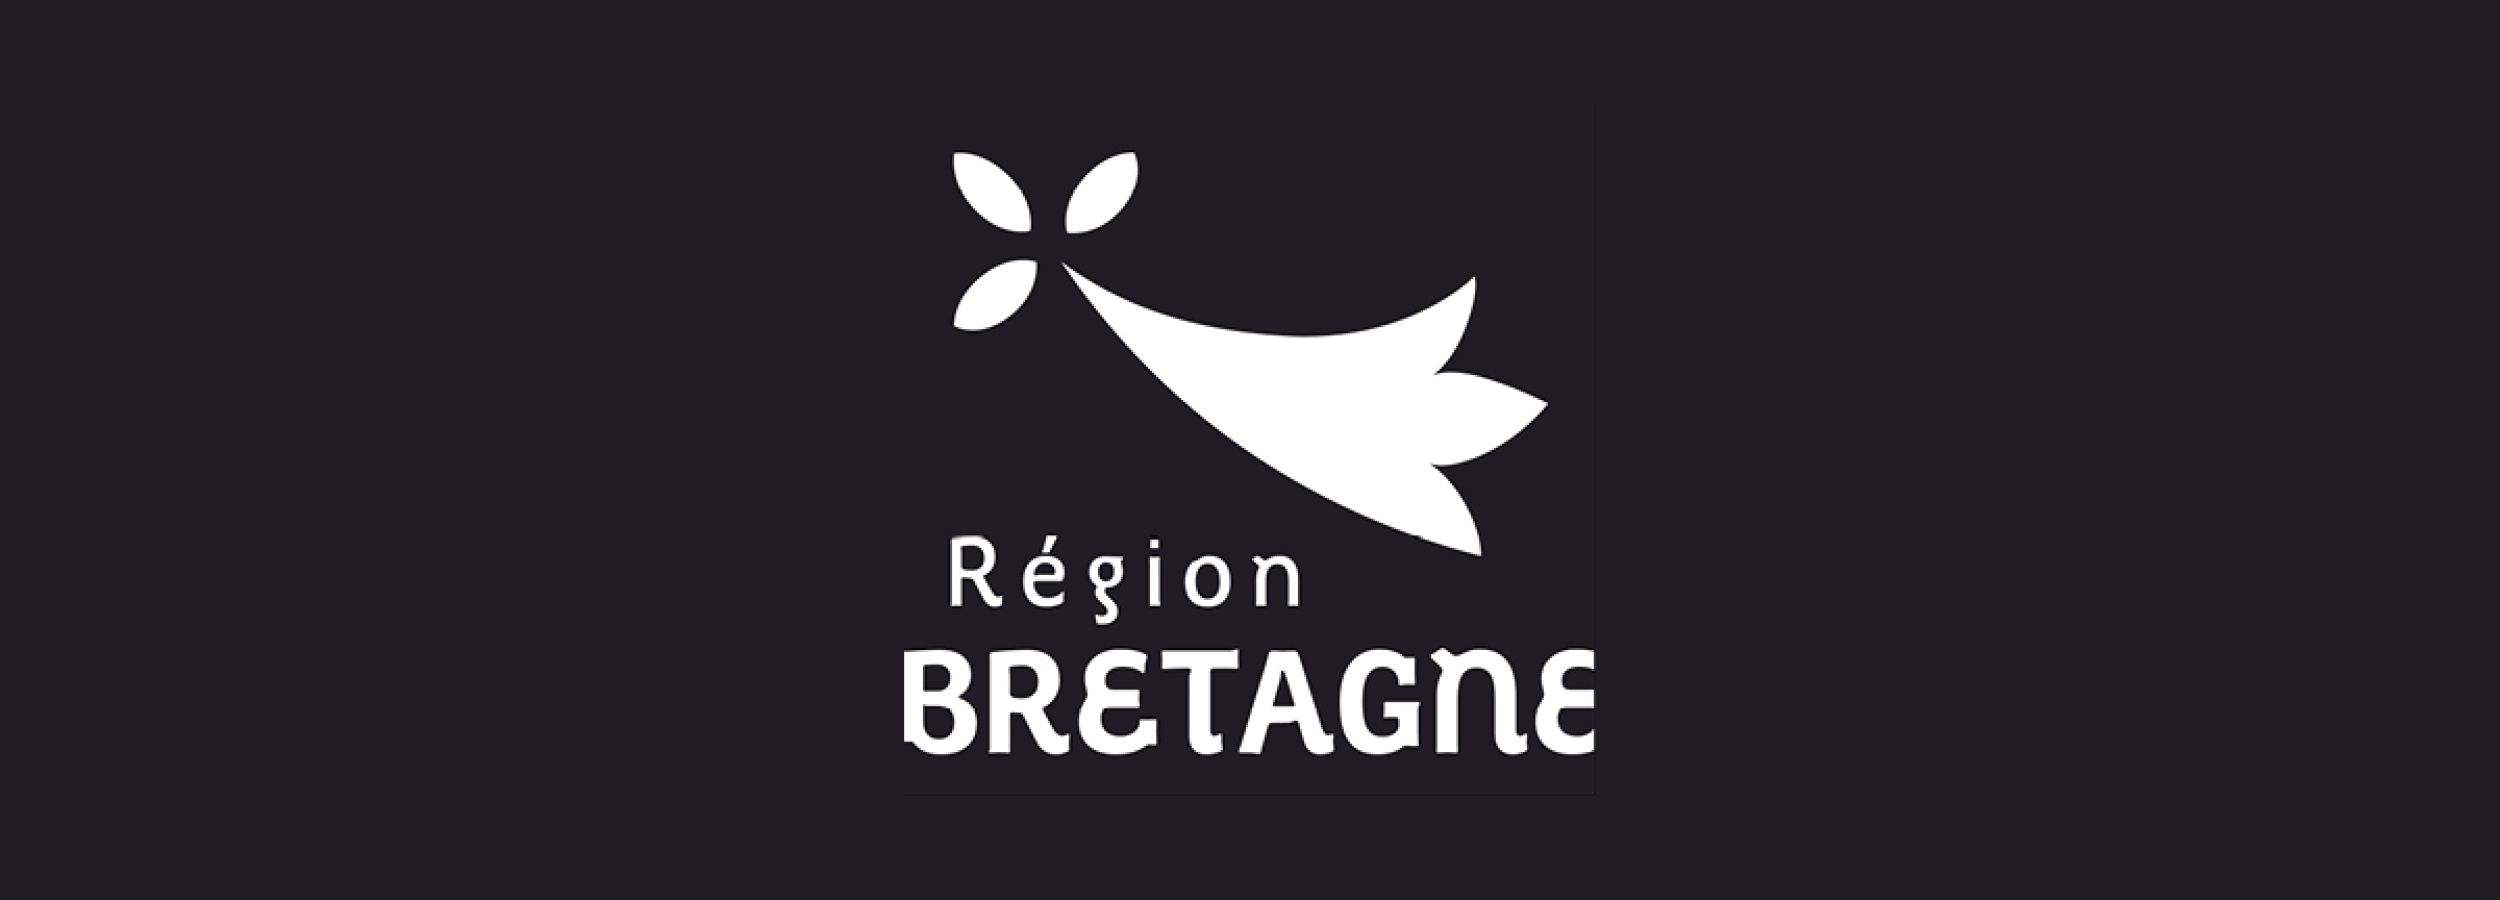 Revue économique | Entreprises de la région Bretagne - LesAmbassadeursFR